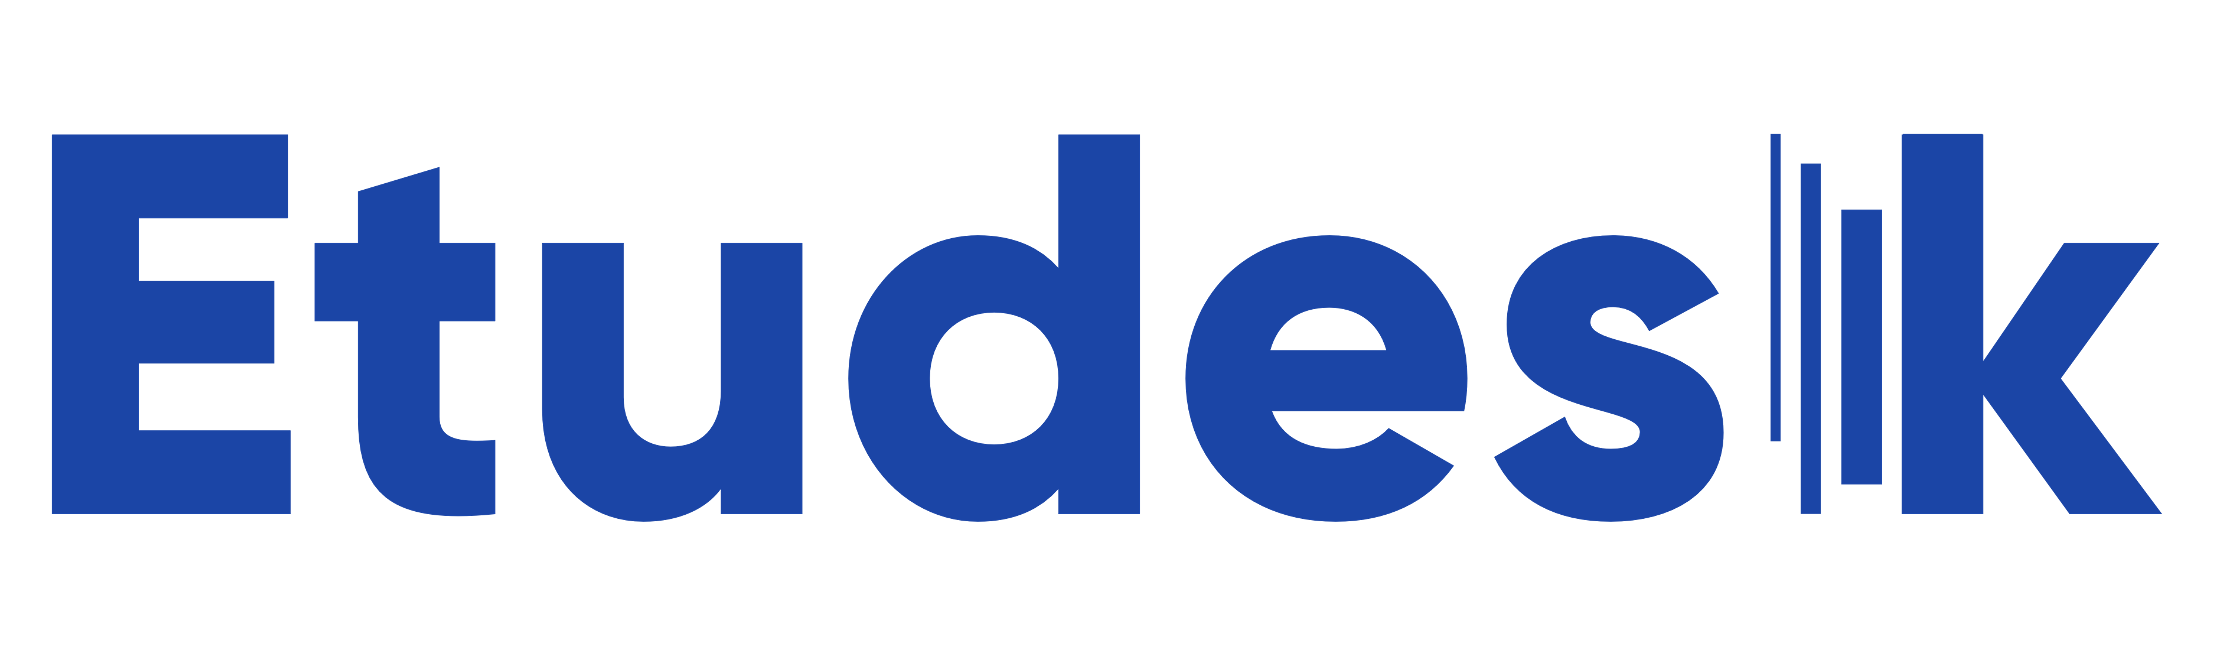 Etudesk Logo